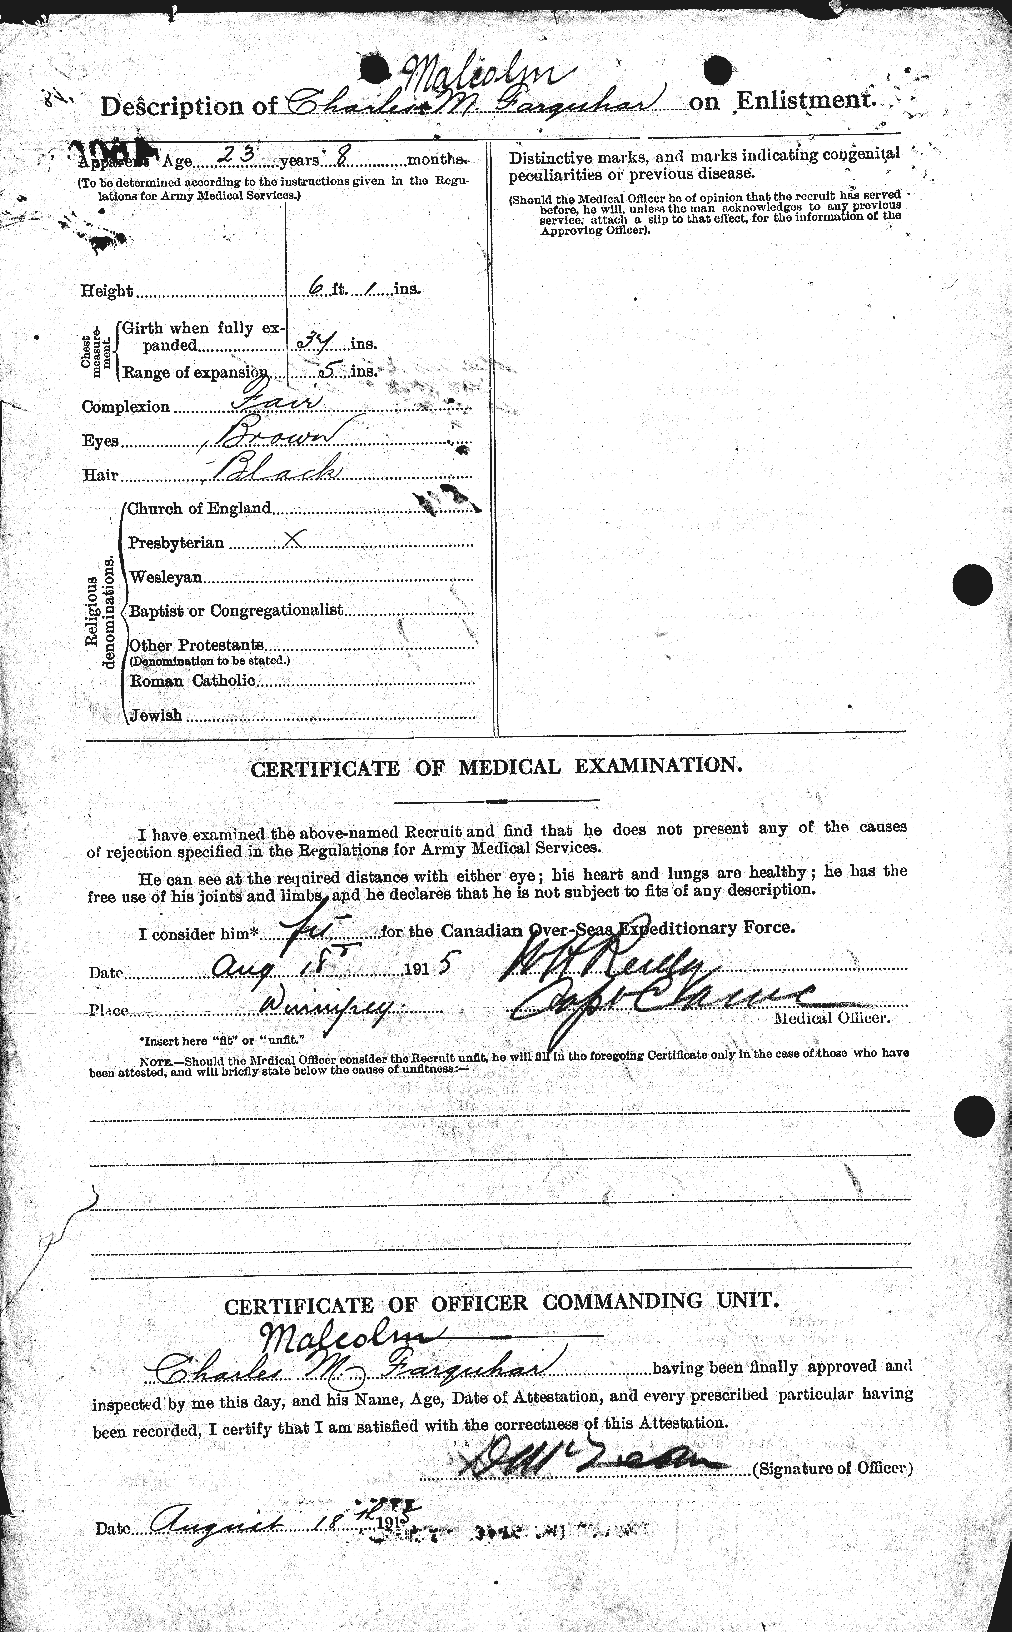 Dossiers du Personnel de la Première Guerre mondiale - CEC 318766b